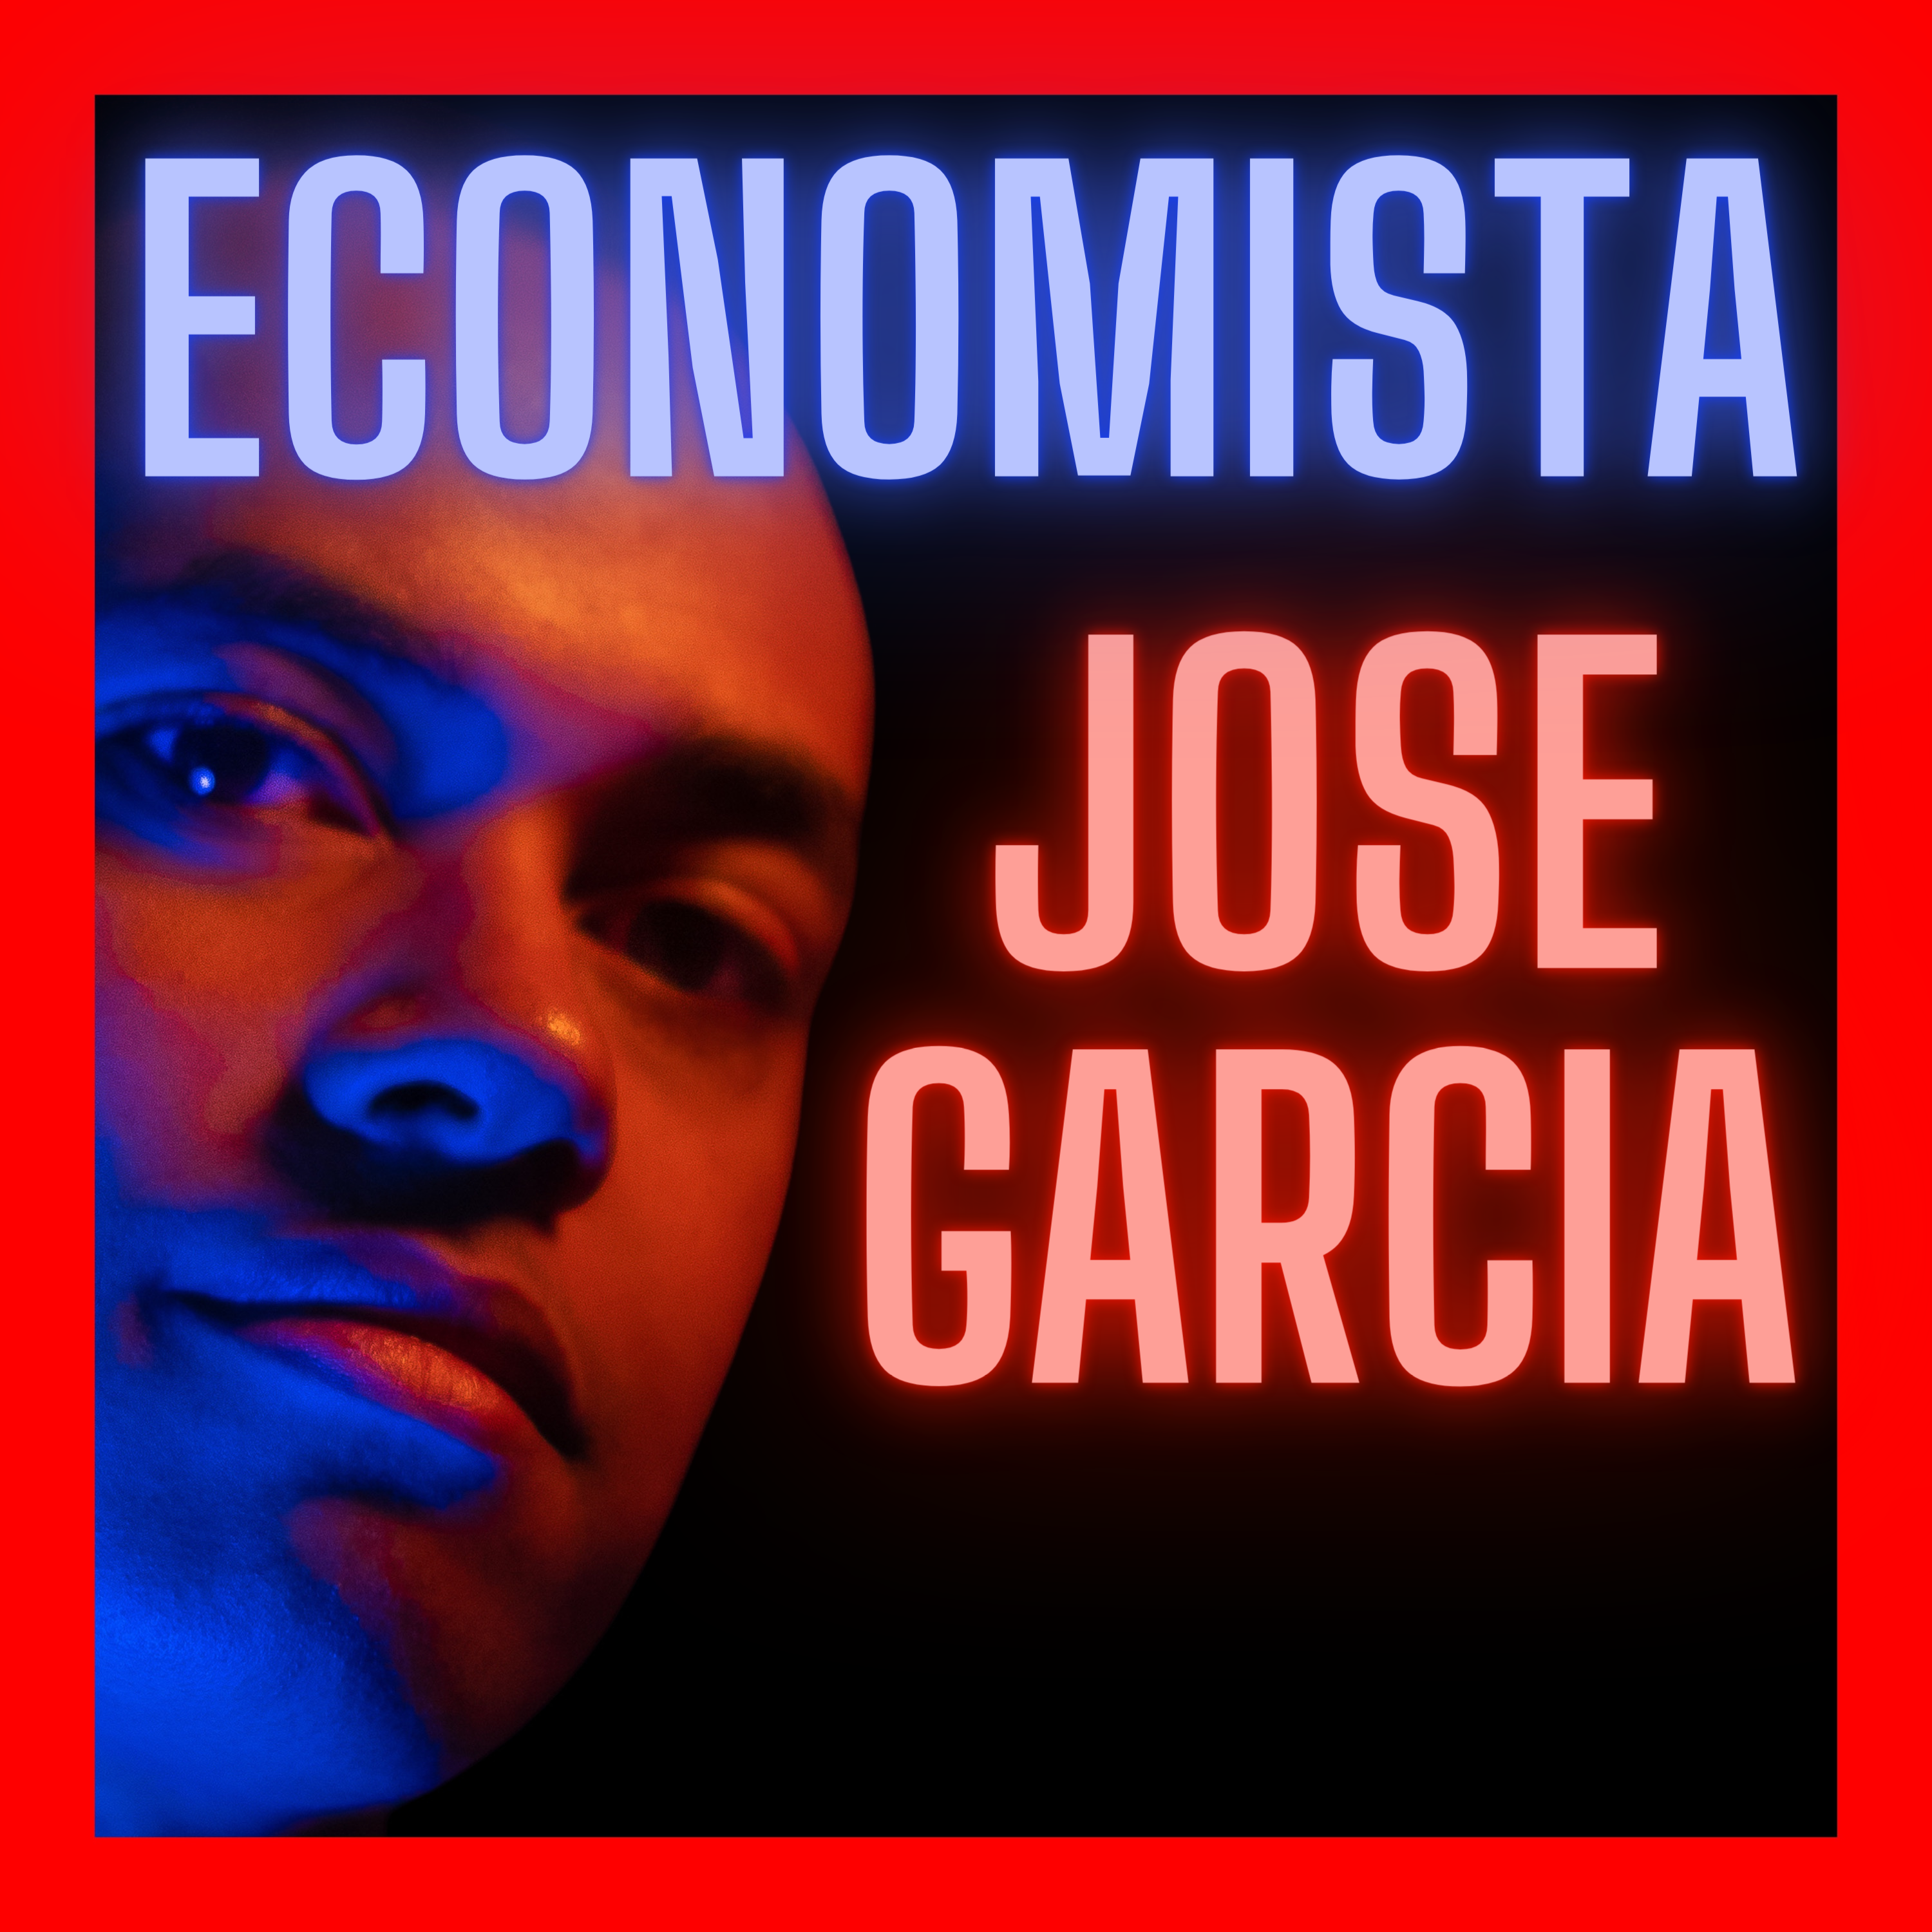 Mejora Y Emprende . com - Podcast 002 - ¿Quién es Jose Garcia? - Host de Mejora y Emprende